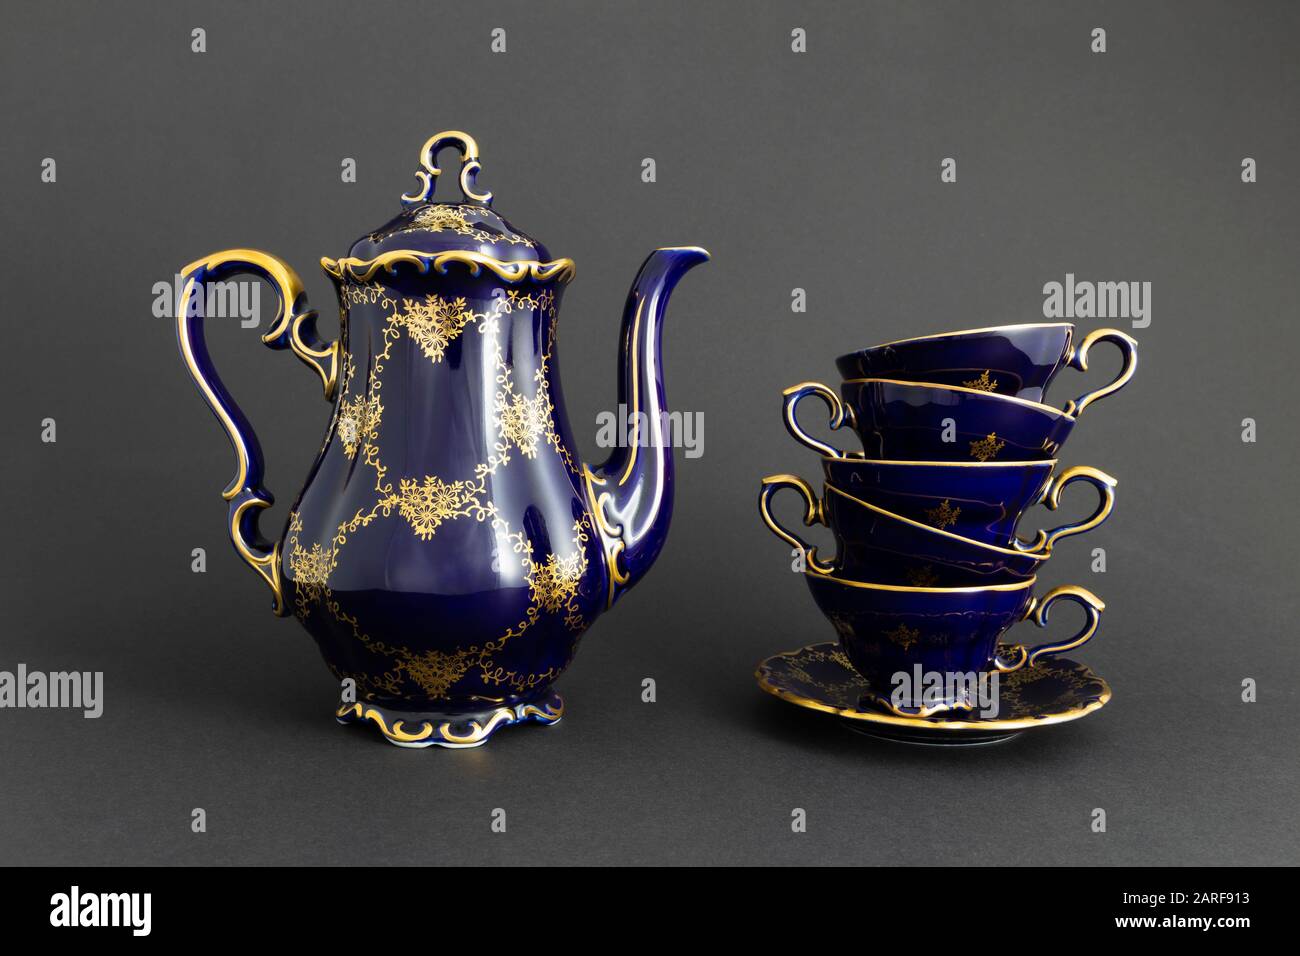 Nahaufnahme eines schönen kobaltblau gefärbten Vintage-Porzellan-Teesets  mit goldenem Blumenmuster auf dunkelgrauem Hintergrund. Das Set umfasst  einen Teekopf, einen Stockfotografie - Alamy